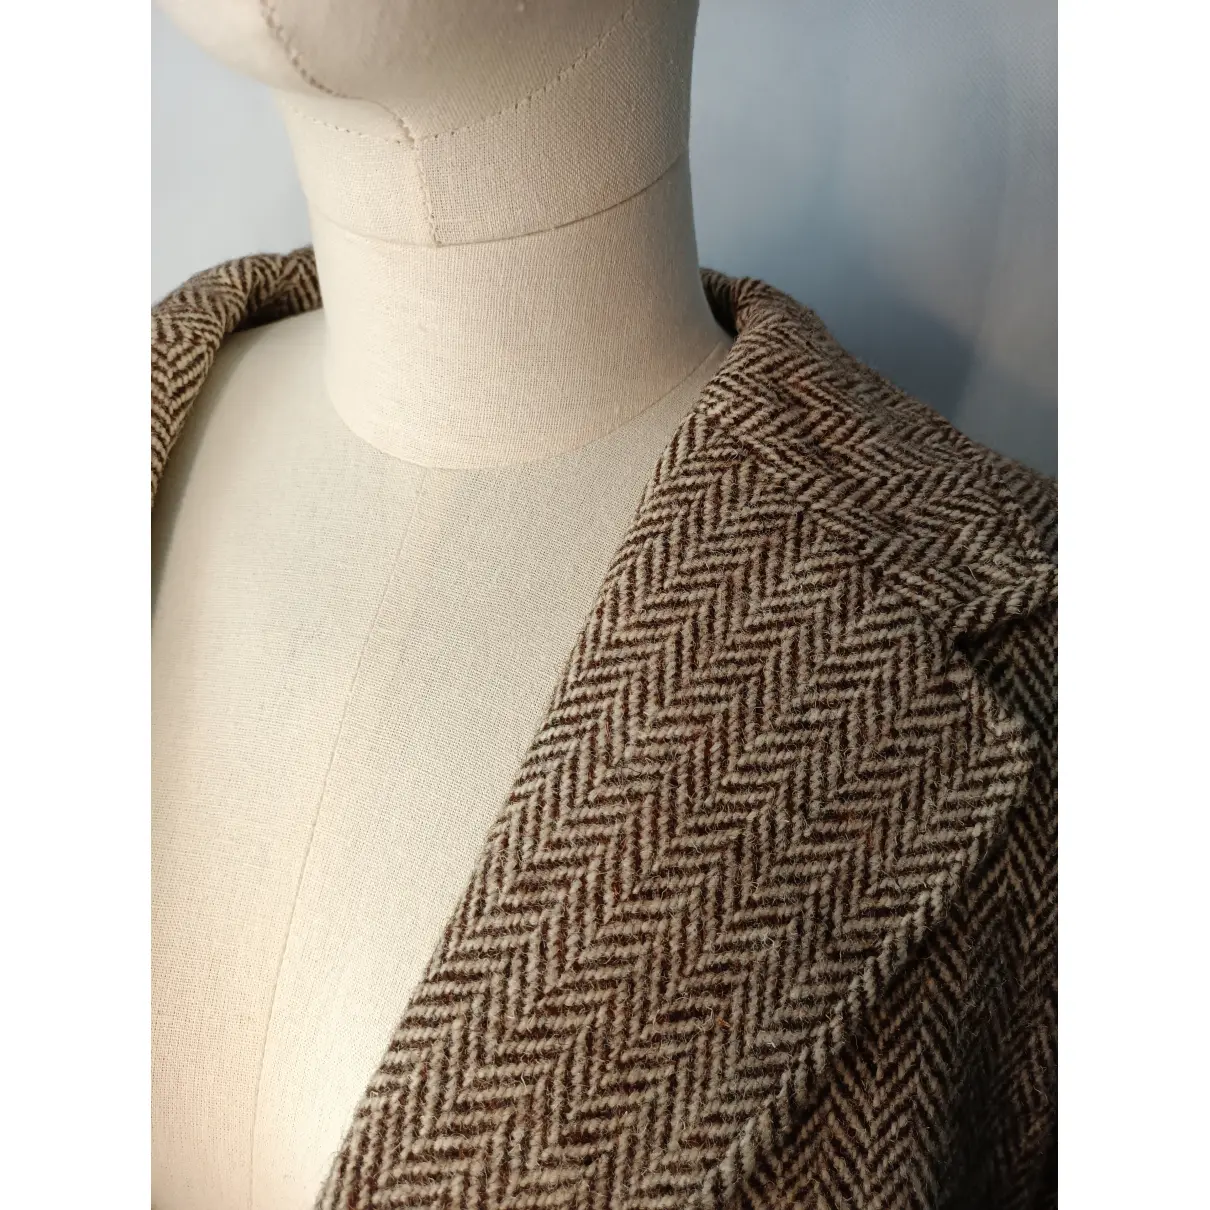 Wool jacket HARRIS TWEED - Vintage